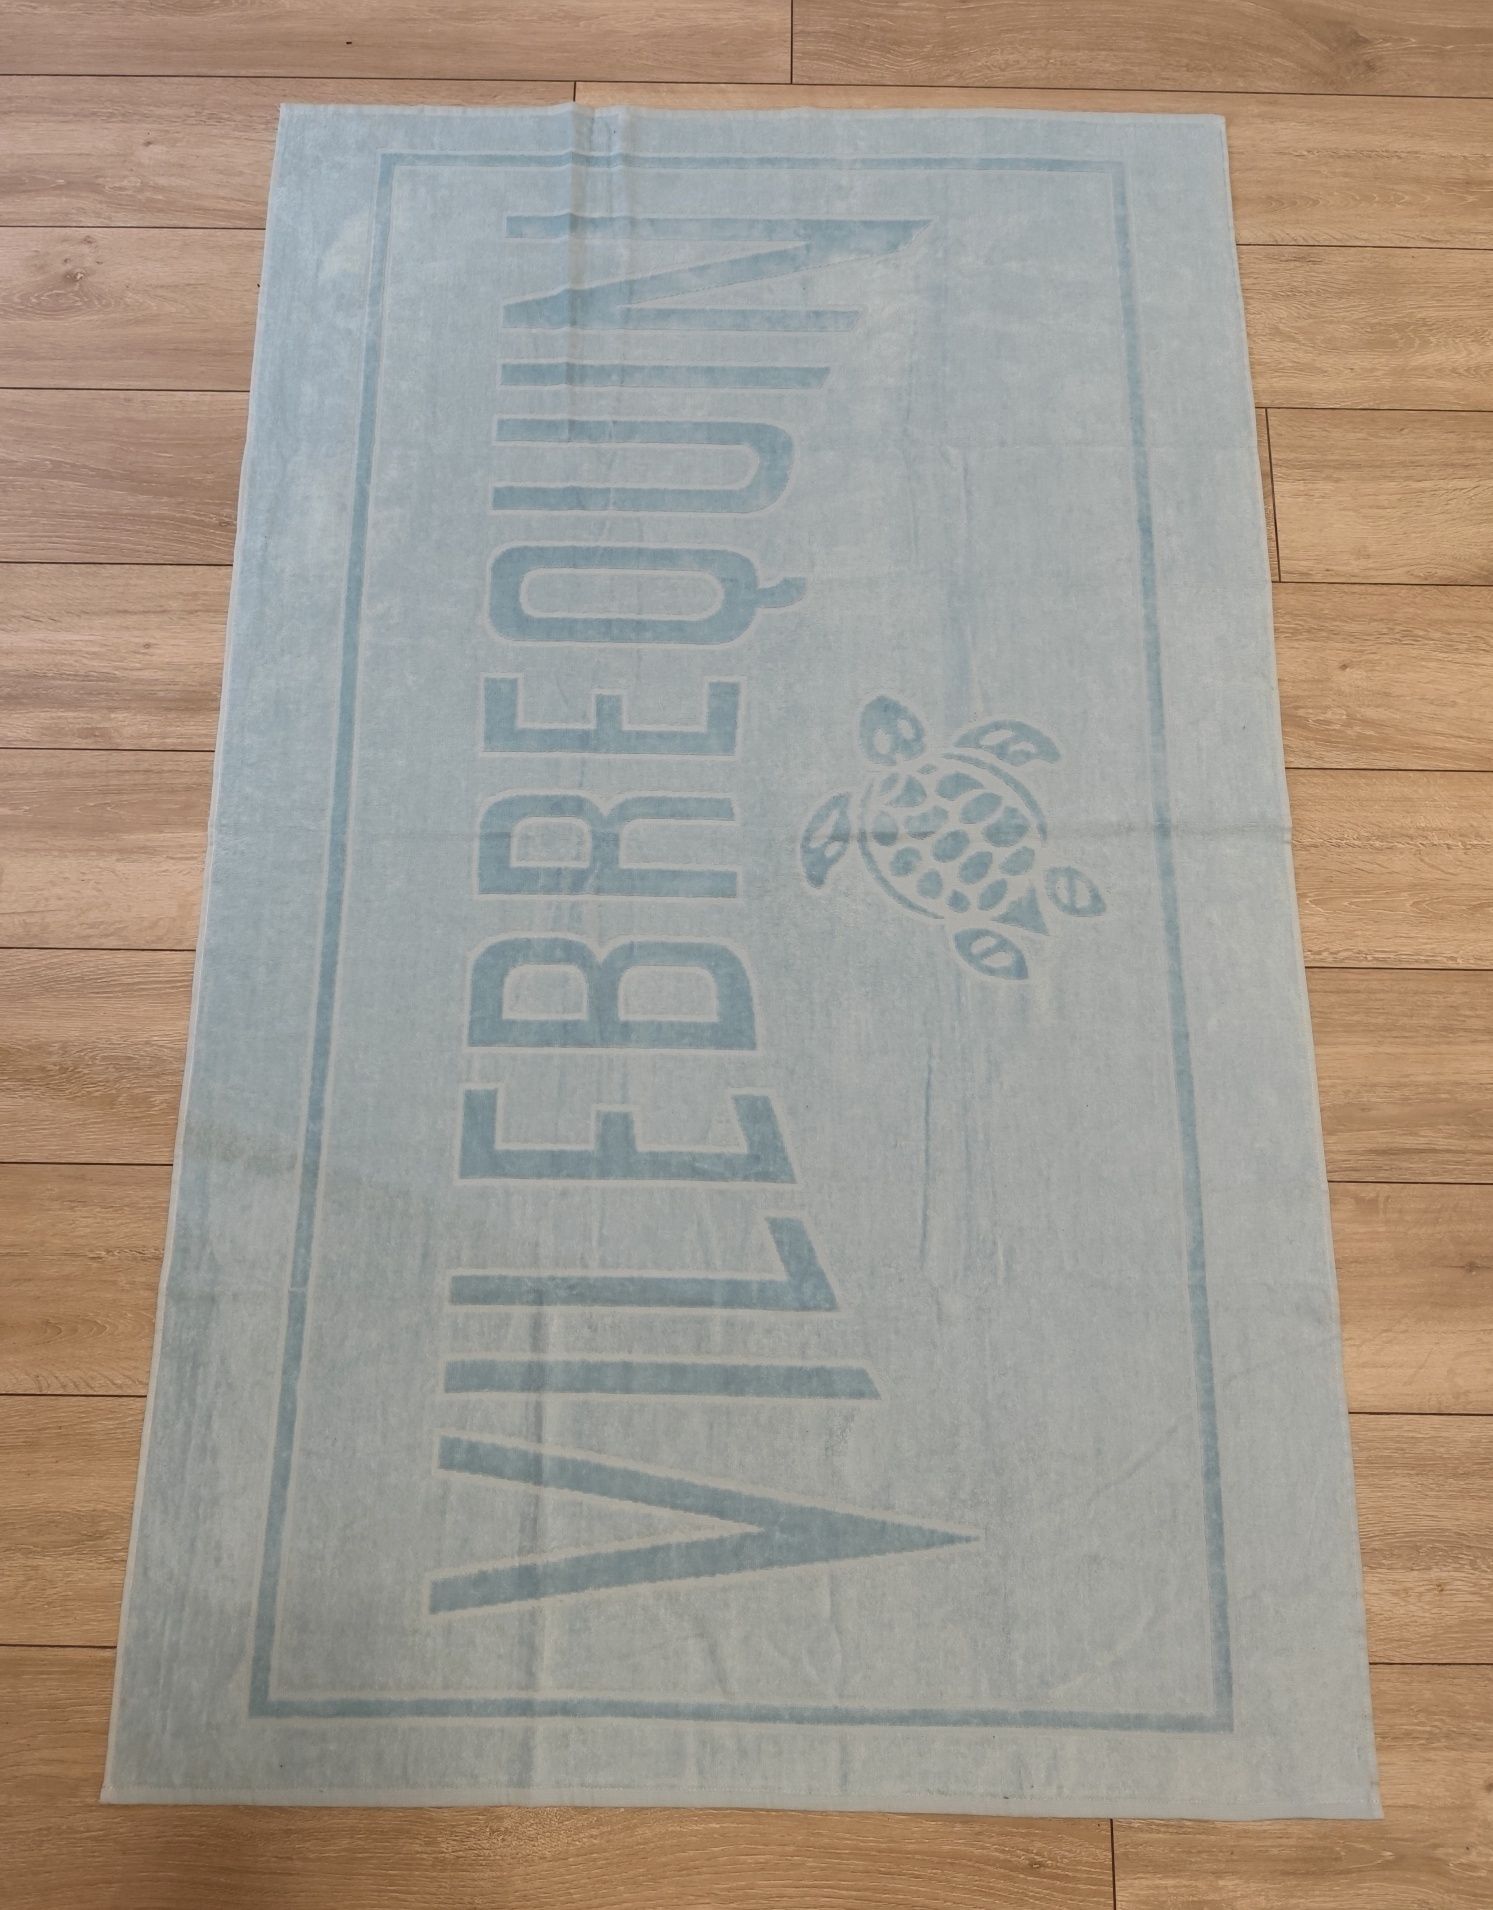 Плажна хавлиена кърпа Vilebrequin 100% памук Сент Тропе Монако 2024